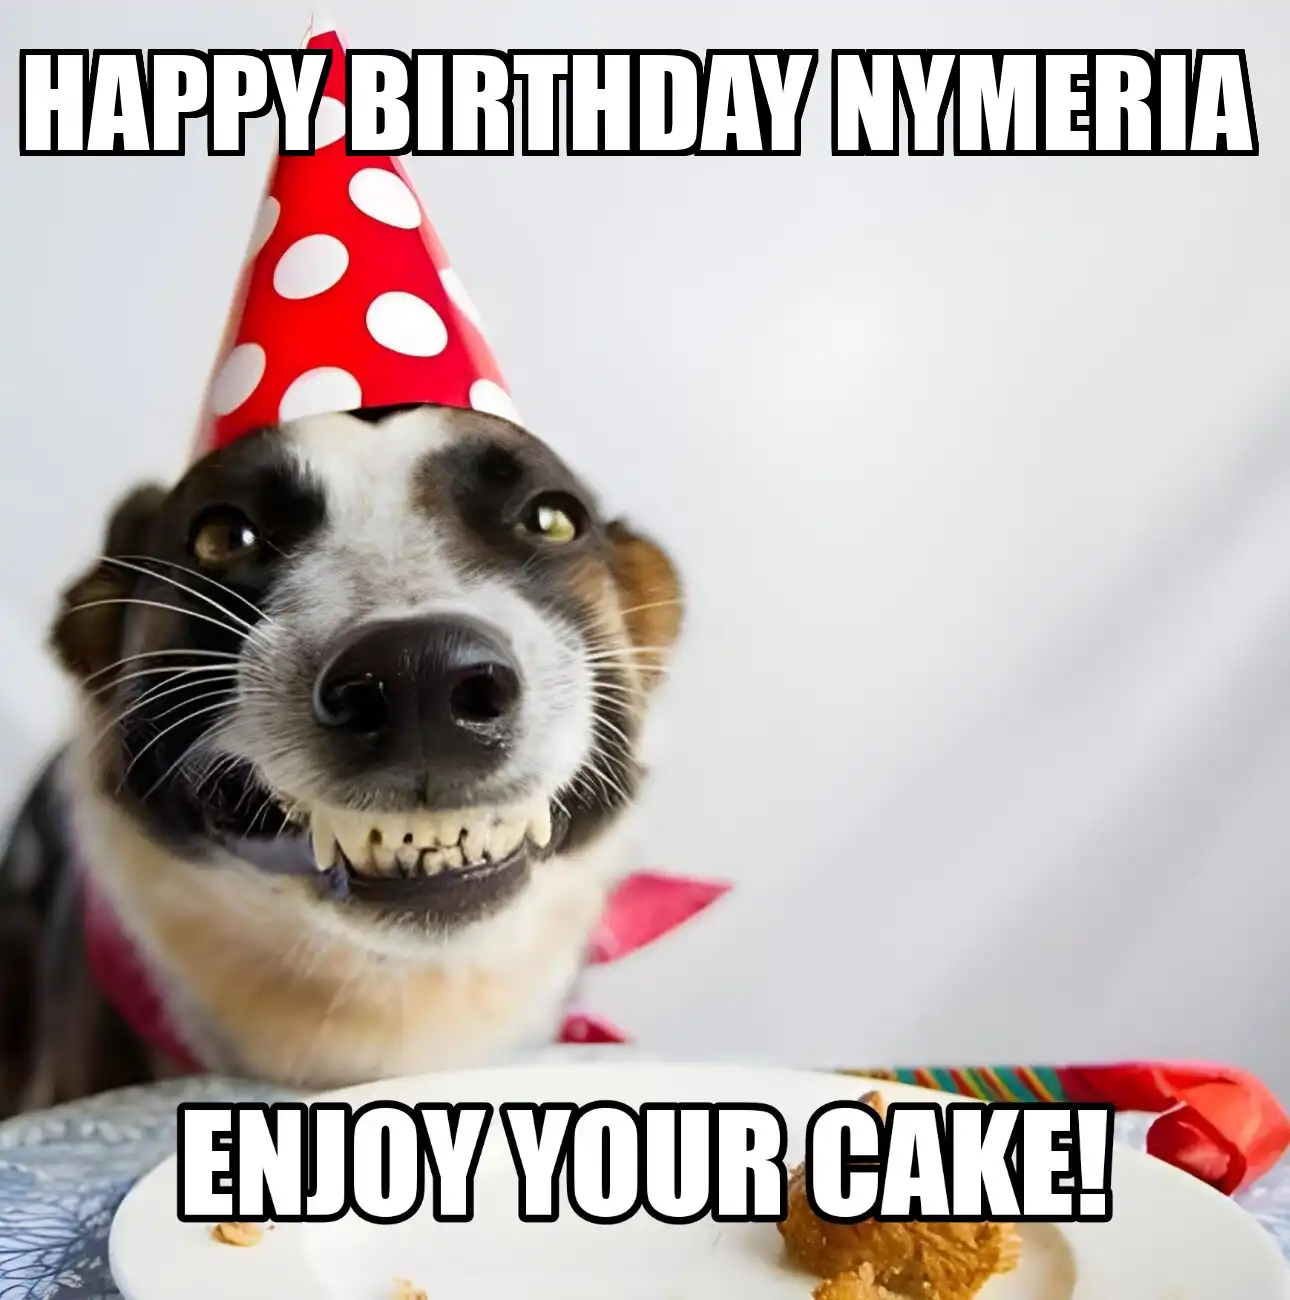 Happy Birthday Nymeria Enjoy Your Cake Dog Meme